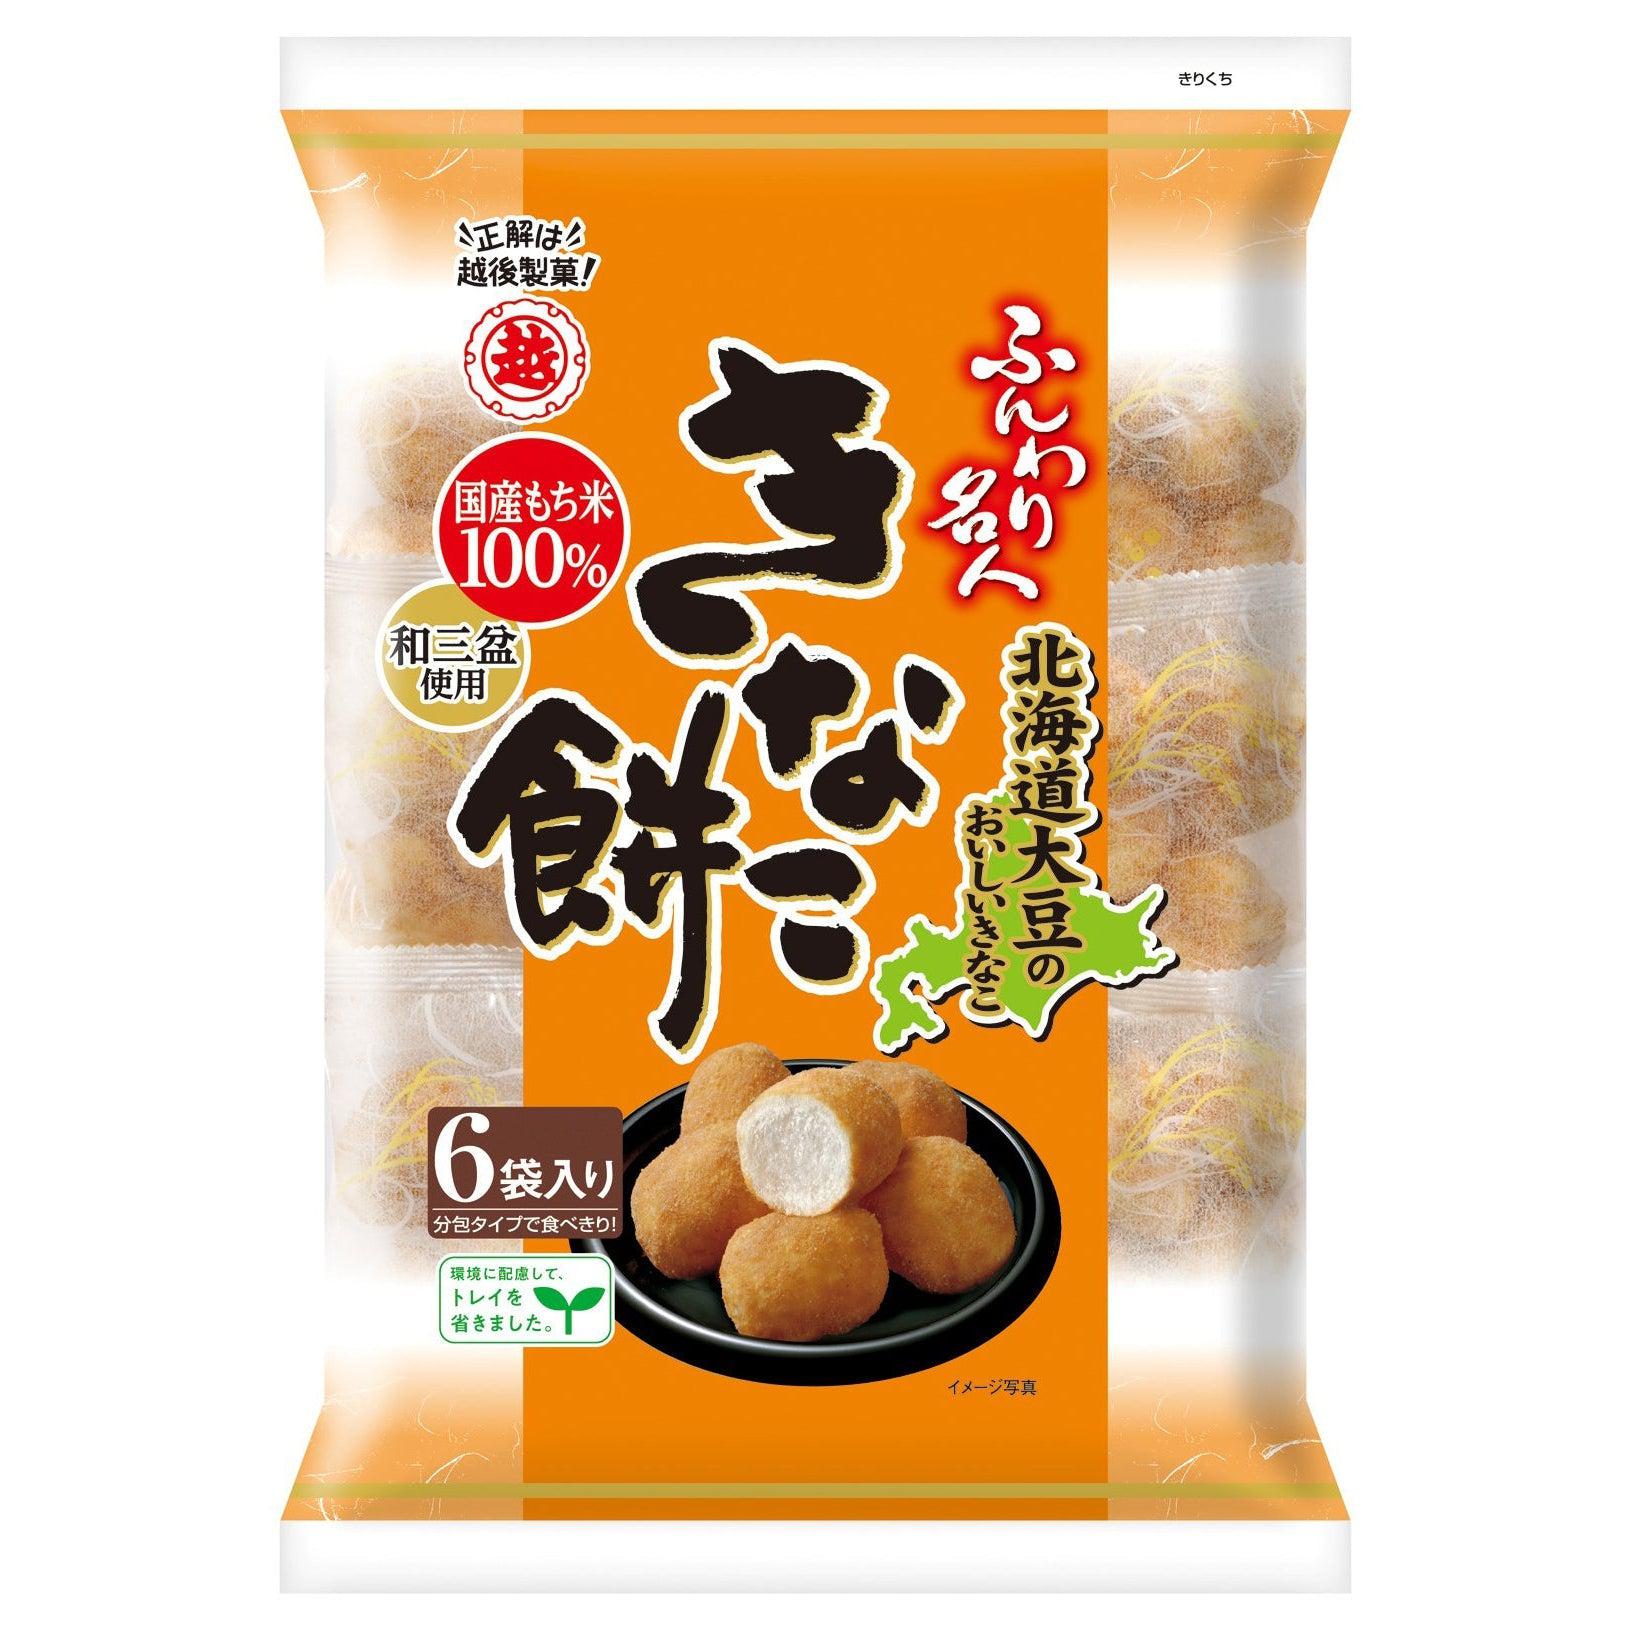 Funwari Meijin Mochi Puffs Snack Kinako Flavor 75g (Pack of 6)